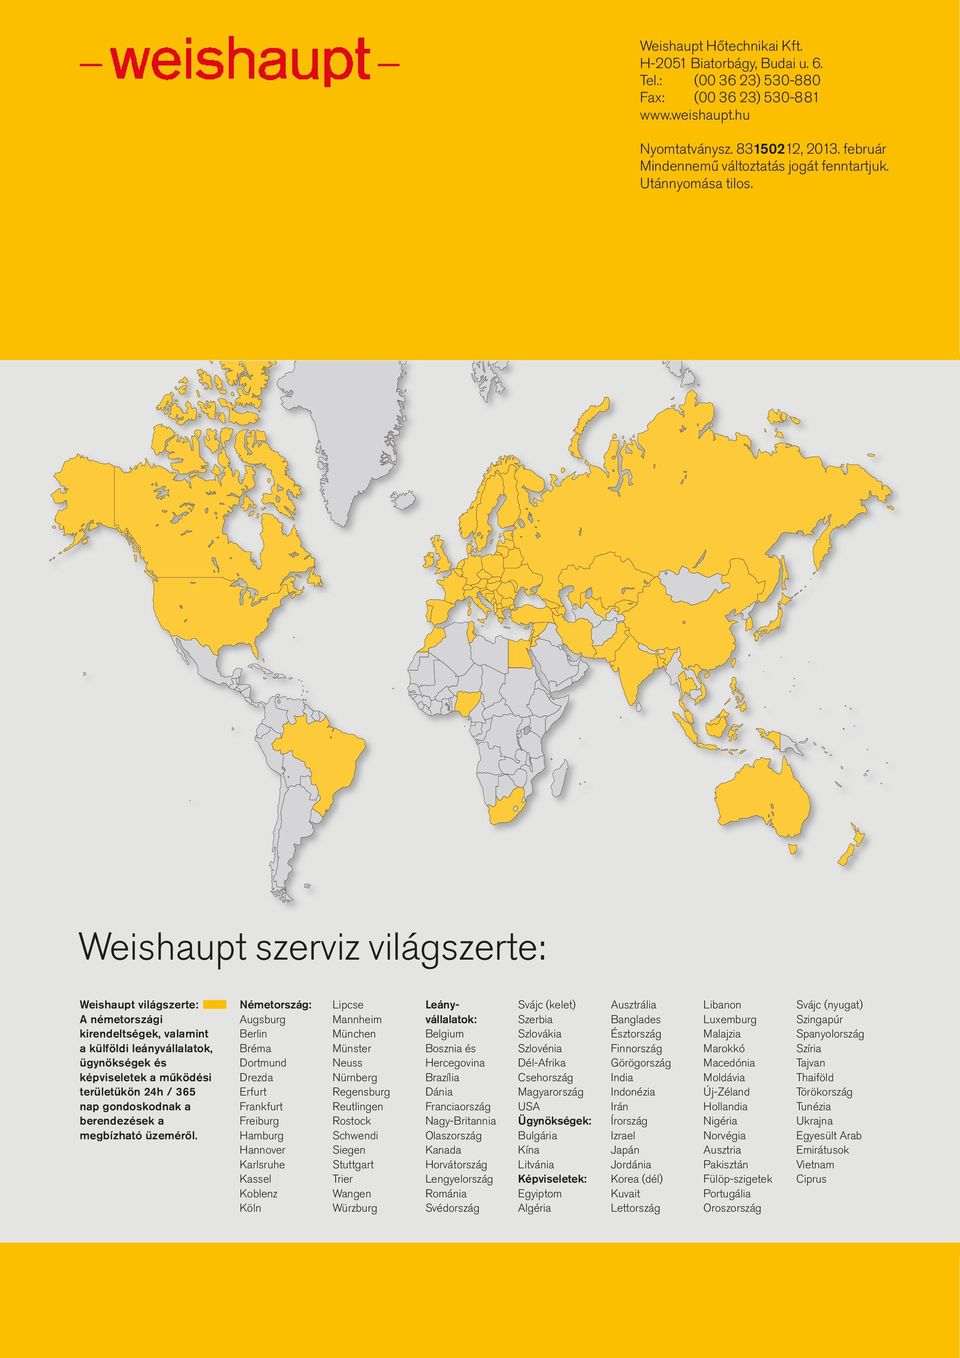 Weishaupt szerviz világszerte: Weishaupt világszerte: A németországi kirendeltségek, valamint a külföldi leányvállalatok, ügynökségek és képviseletek a működési területükön 24h / 365 nap gondoskodnak